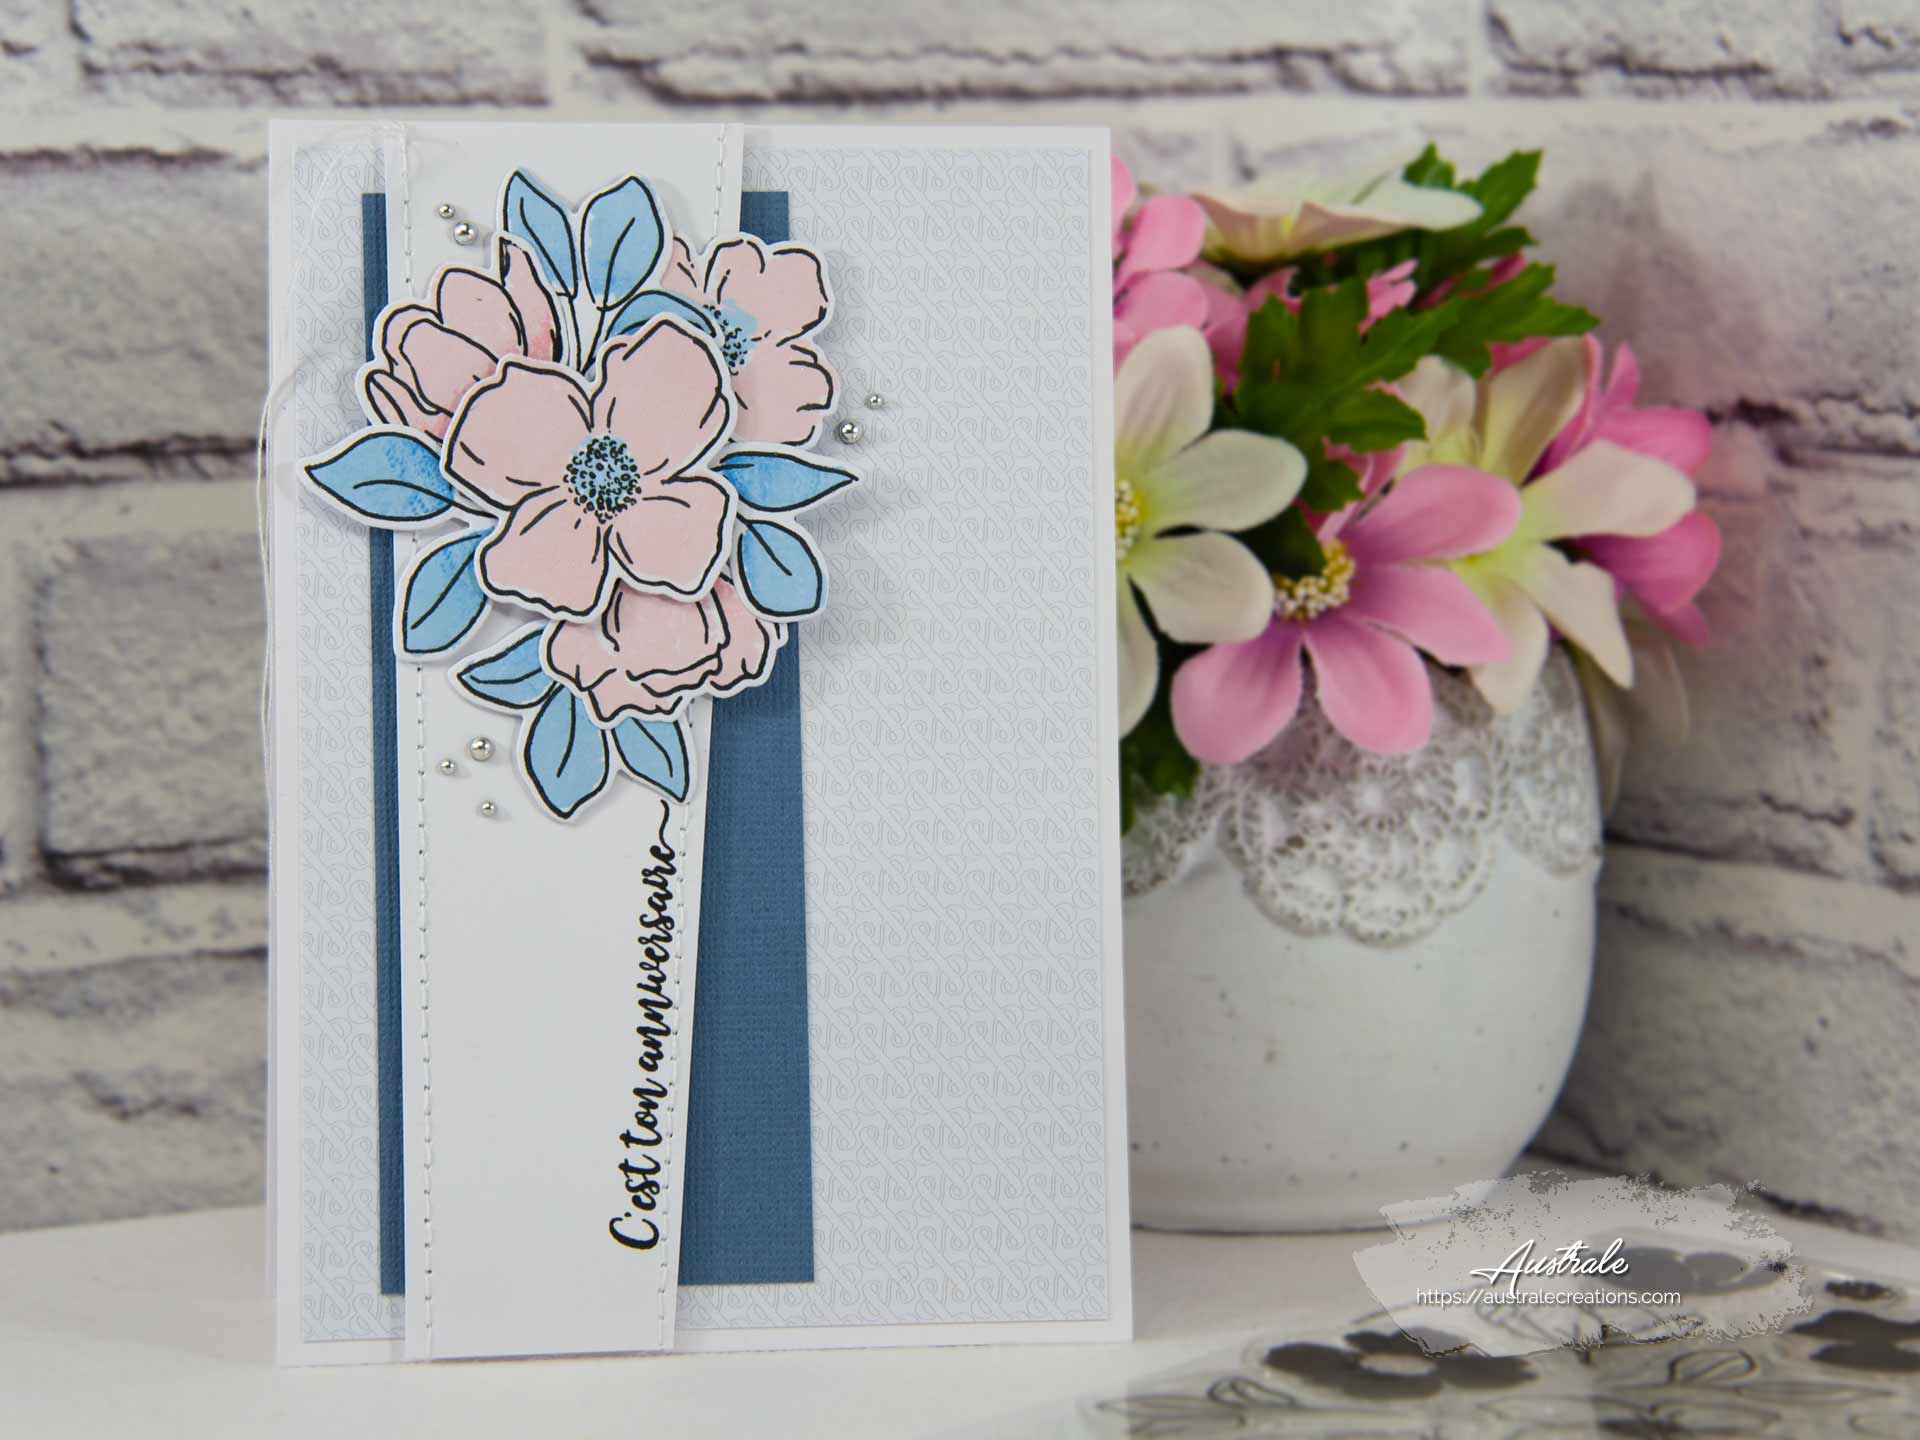 Création d'une carte d'anniversaire en rose, bleu et gris avec fleurs, feuillages et papier esperluettes.